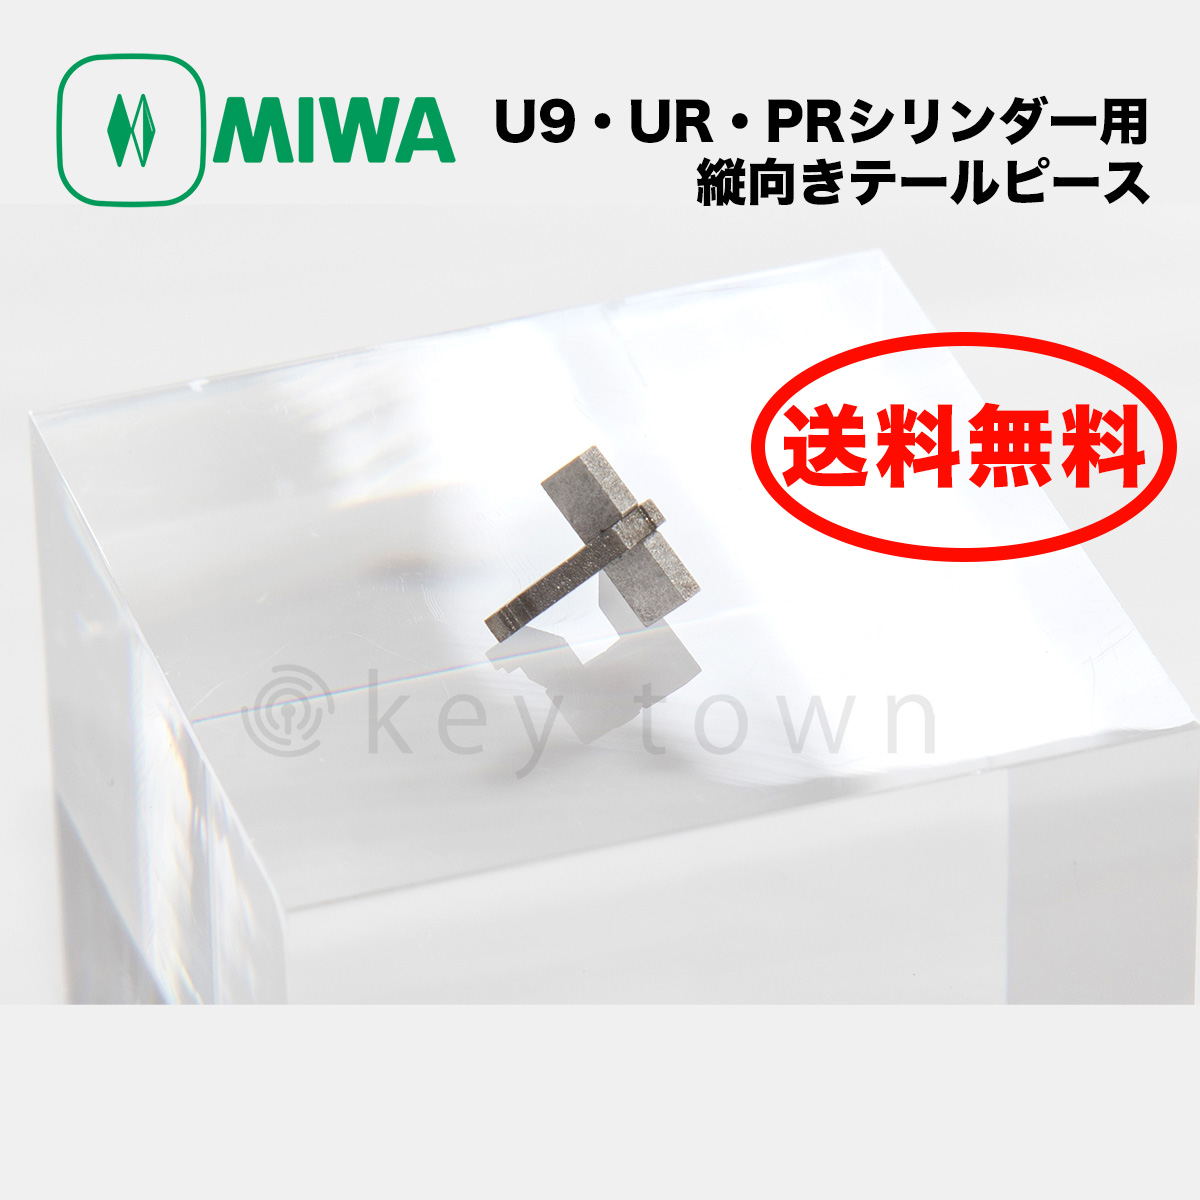 MIWA 【美和ロック】 U9・UR・PRシリンダー用 縦向きテールピース オプション部品